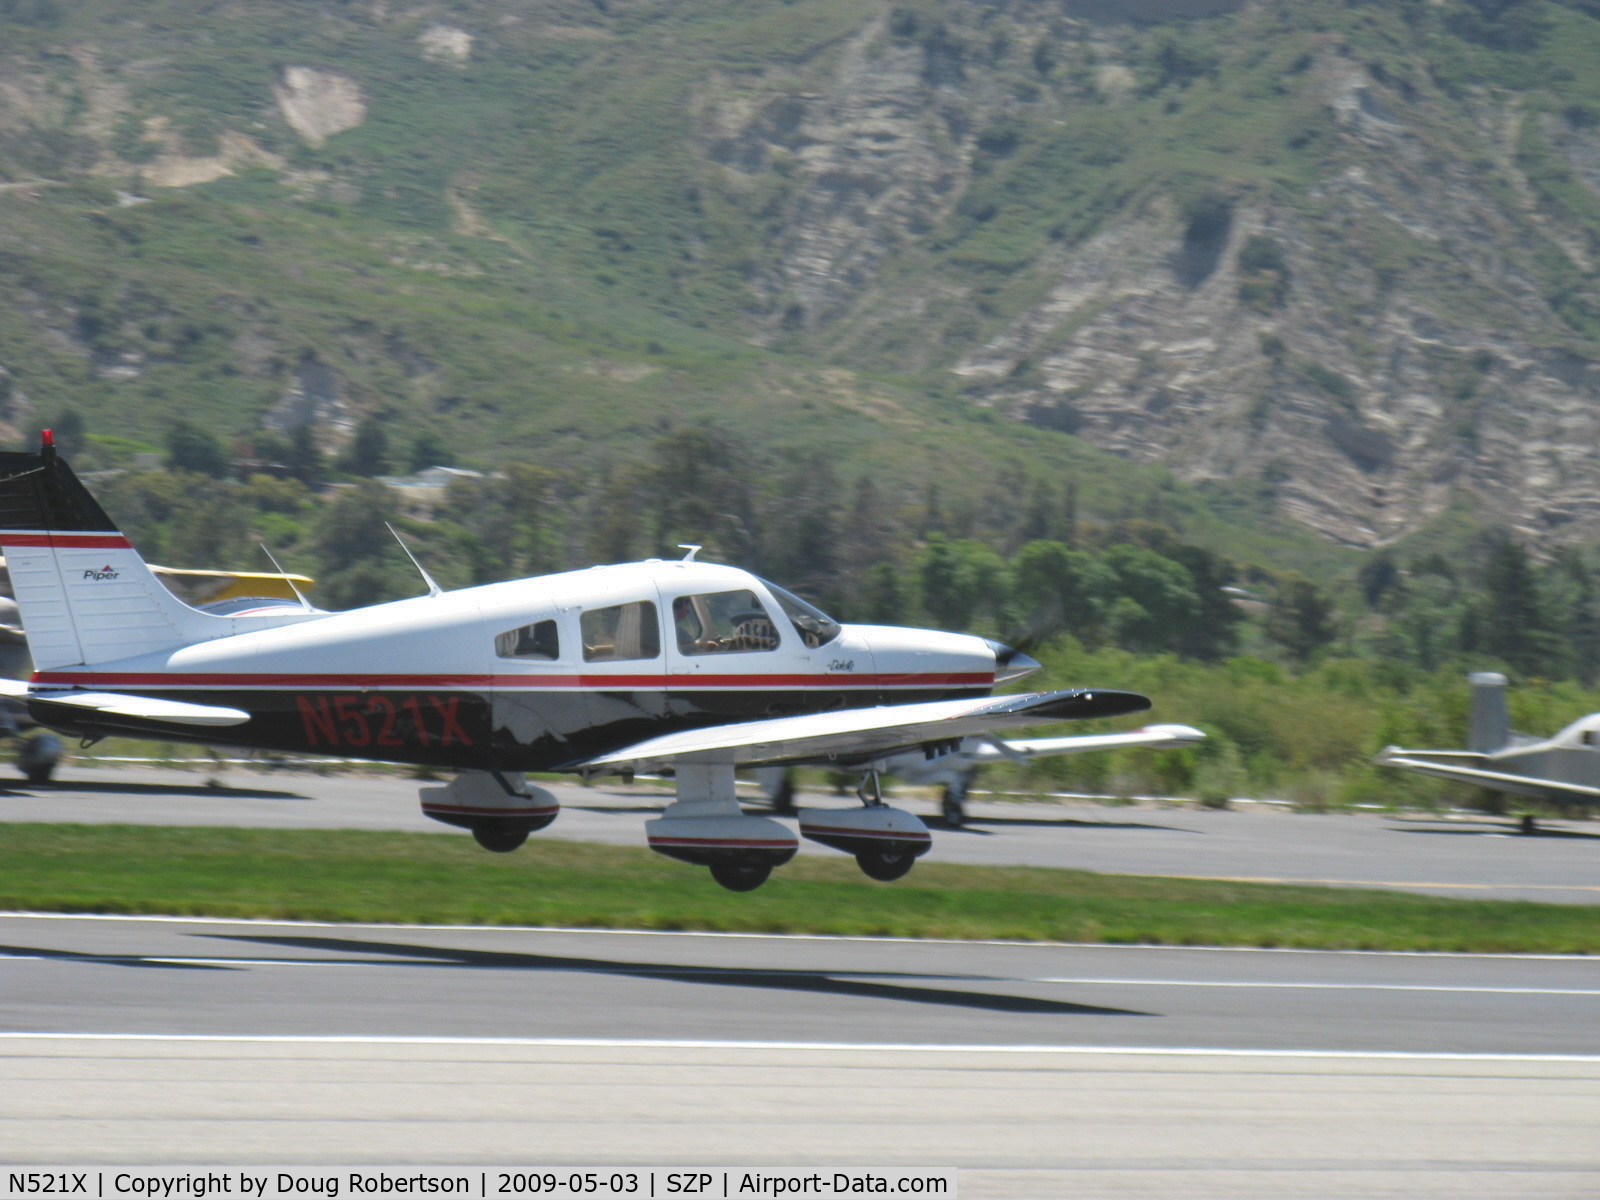 N521X, 1978 Piper PA-28-236 Dakota C/N 28-7911038, 1978 Piper PA-28-236 DAKOTA, Lycoming O-540-J3A5D 235 Hp, takeoff Rwy 22